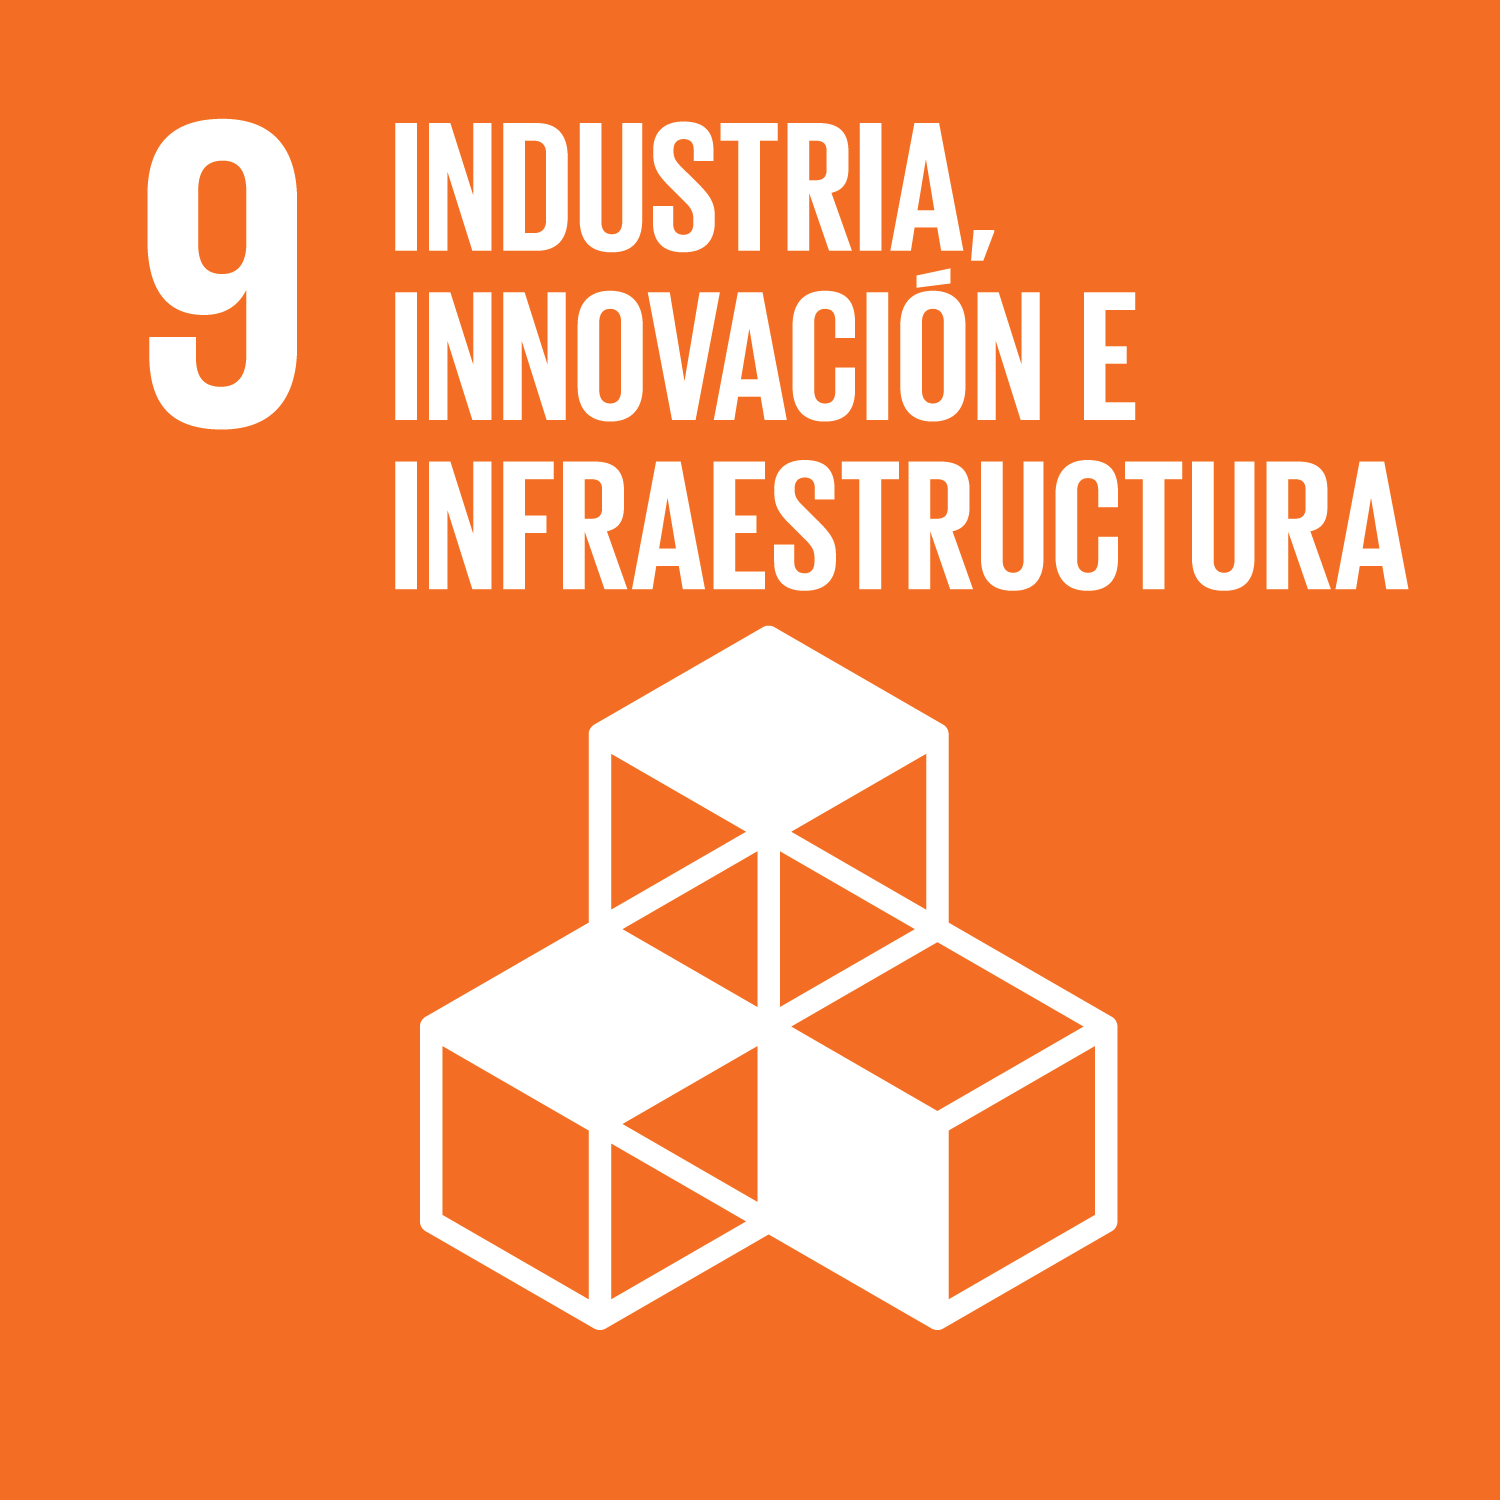 Los Objetivos de Desarrollo Sostenible - Construir infraestructuras resilientes, promover una industrialización inclusiva y sostenible y fomento de la innovación.